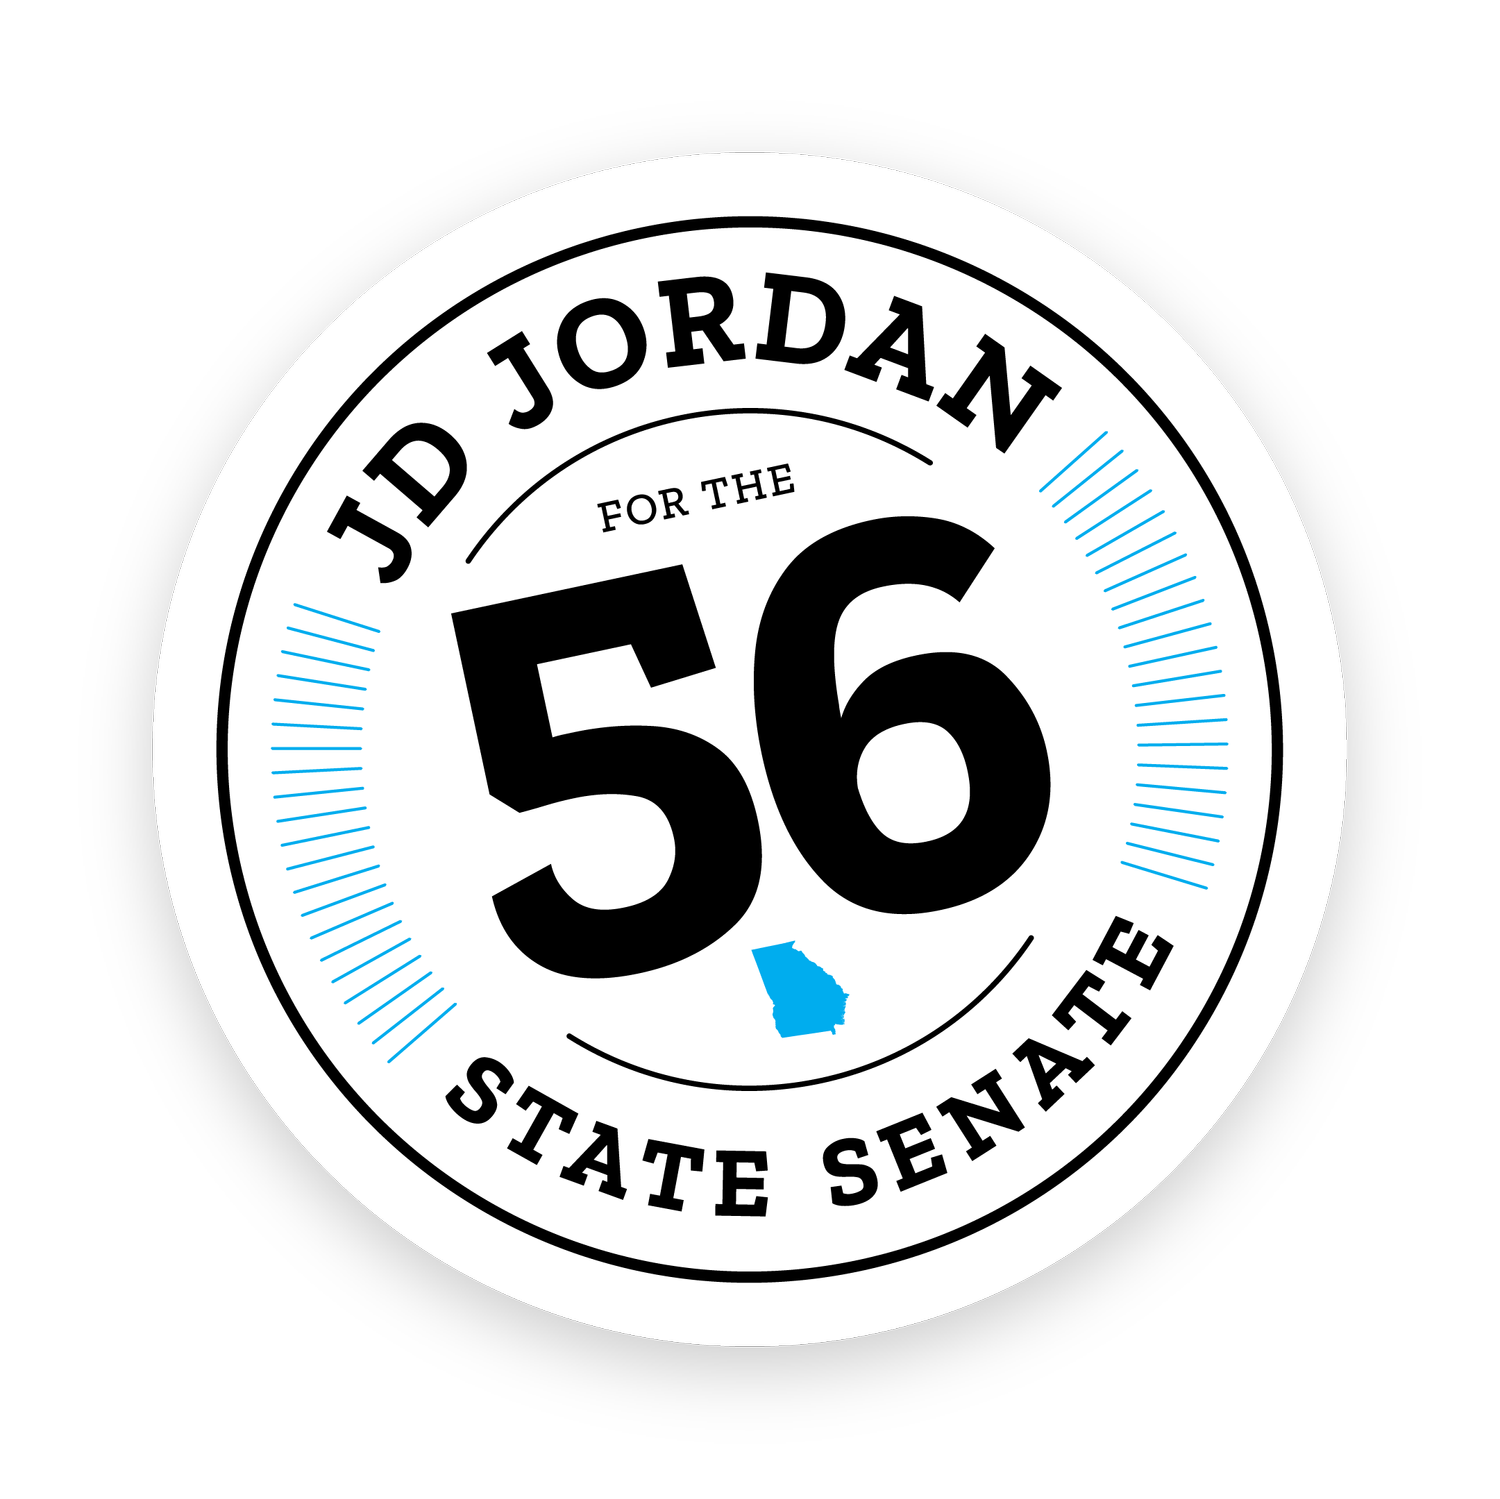 JD Jordan for the 56